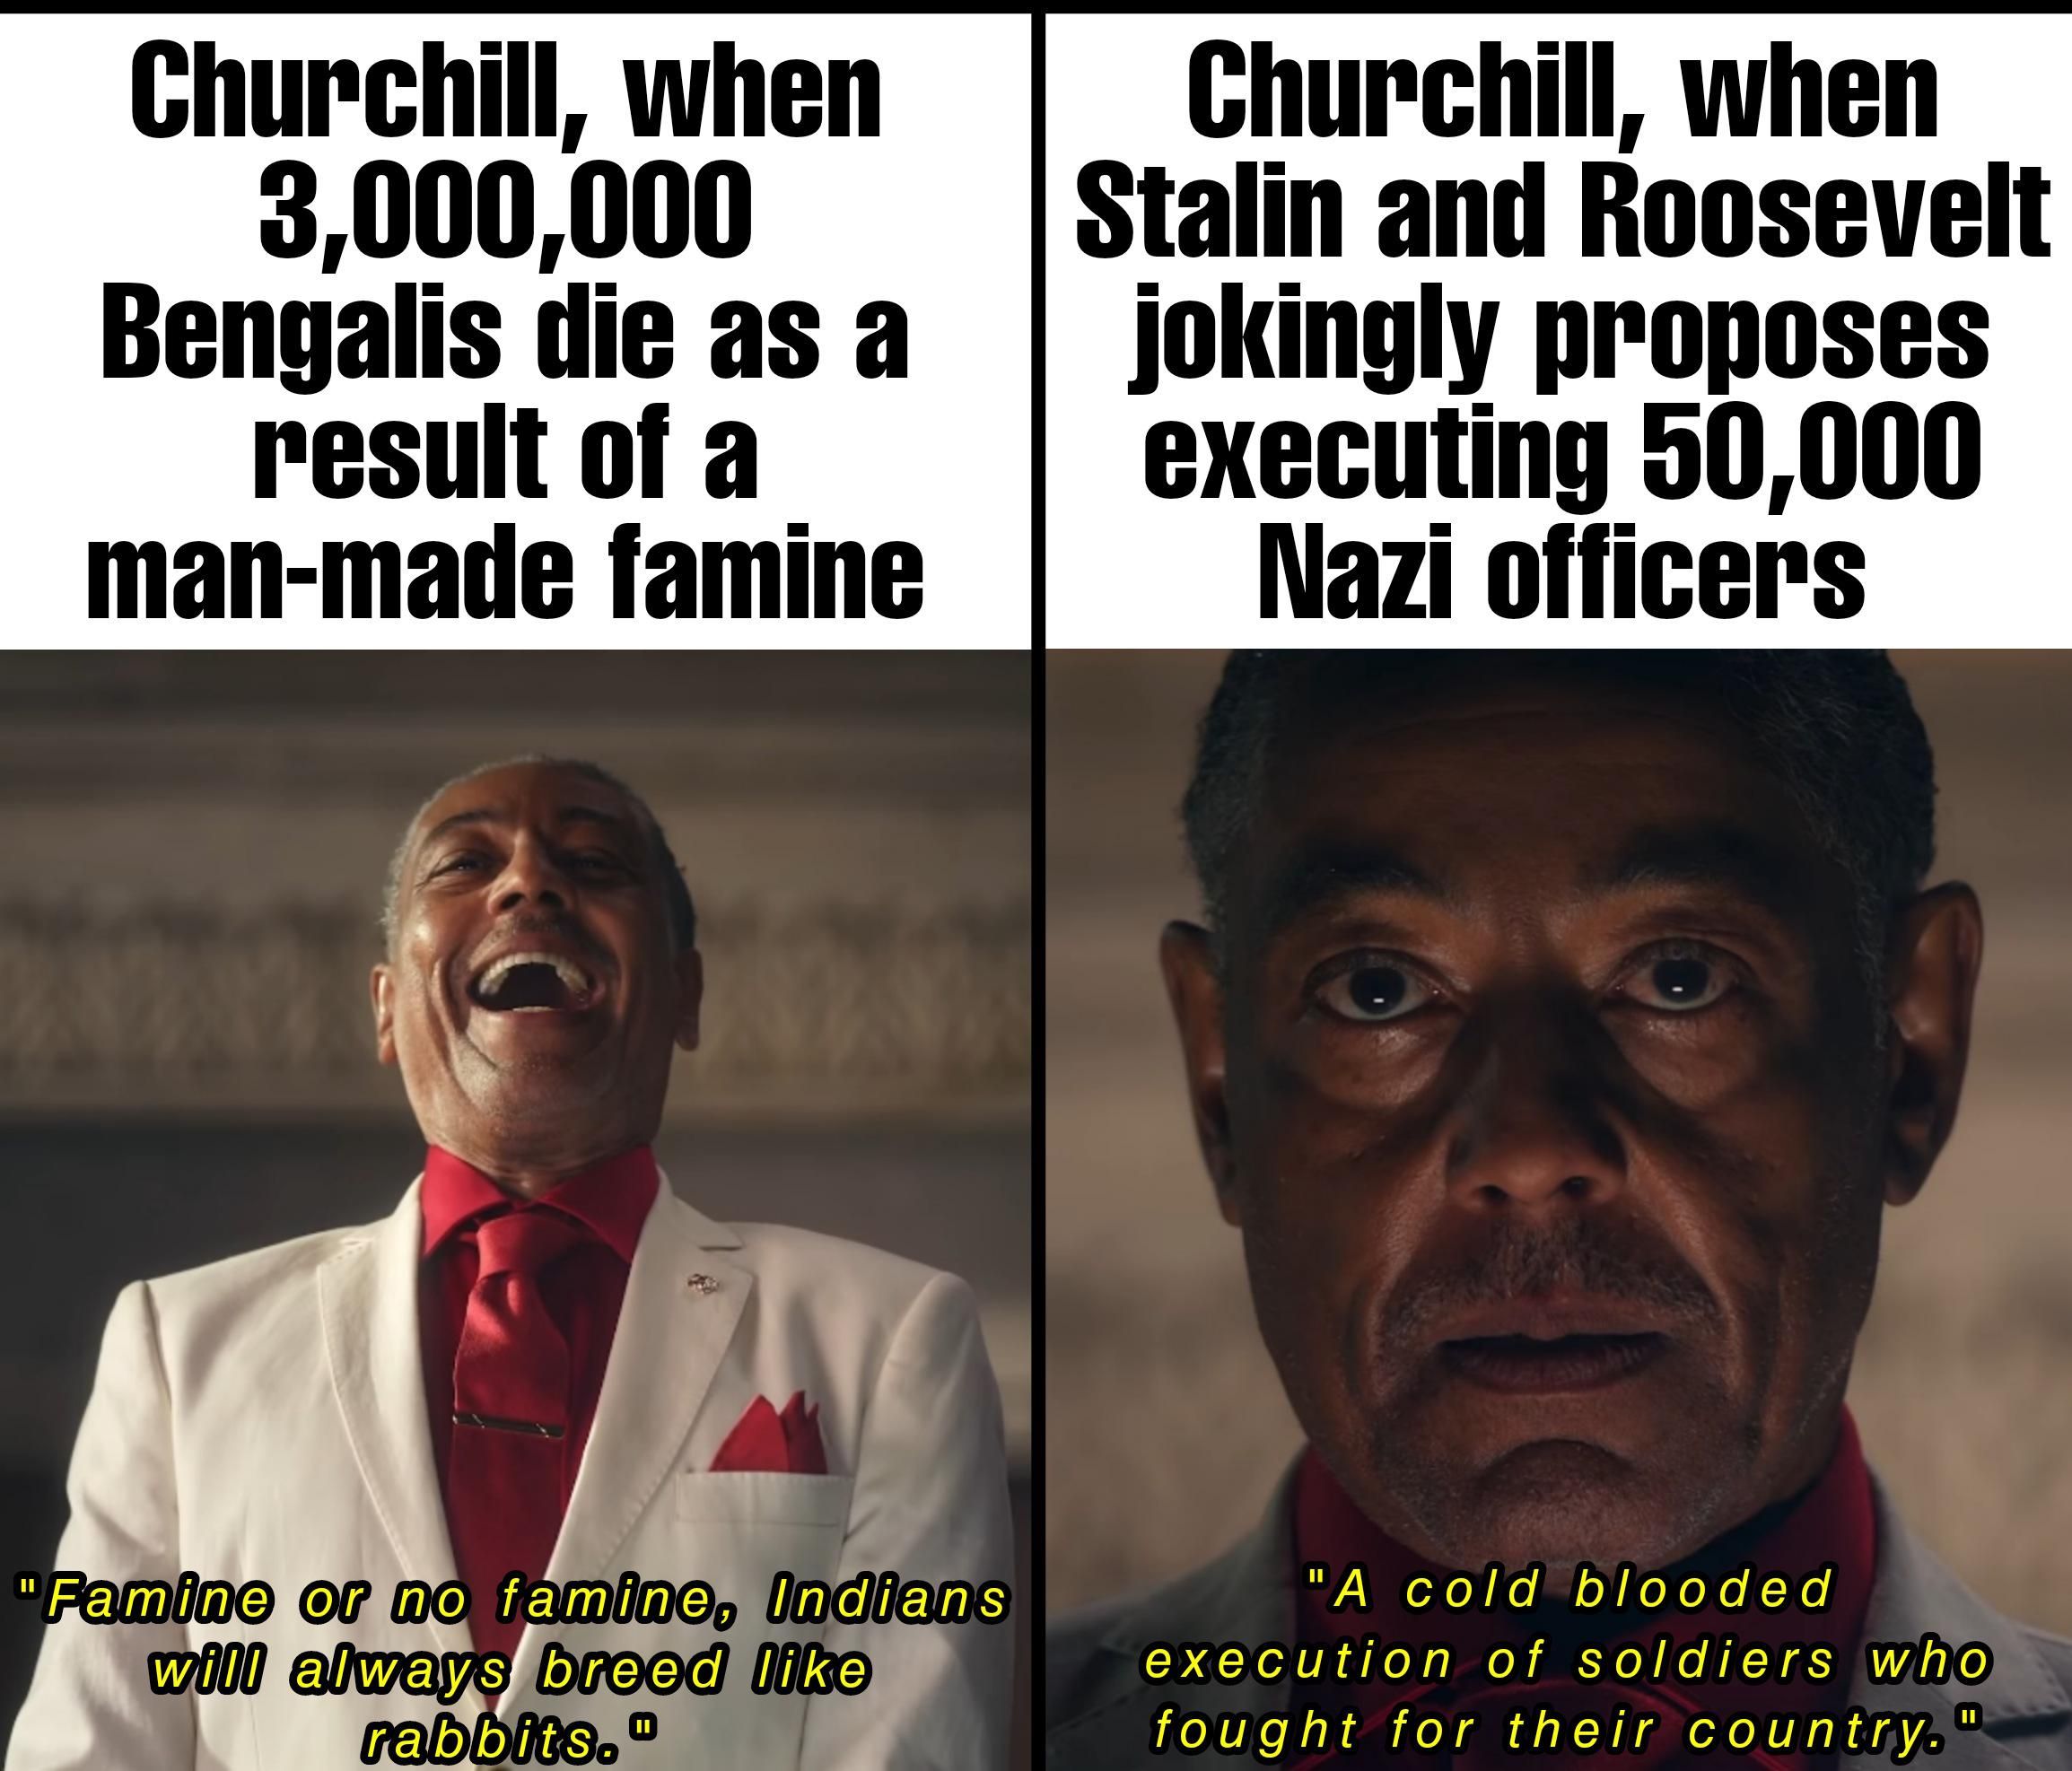 Churchill lacked consistency.